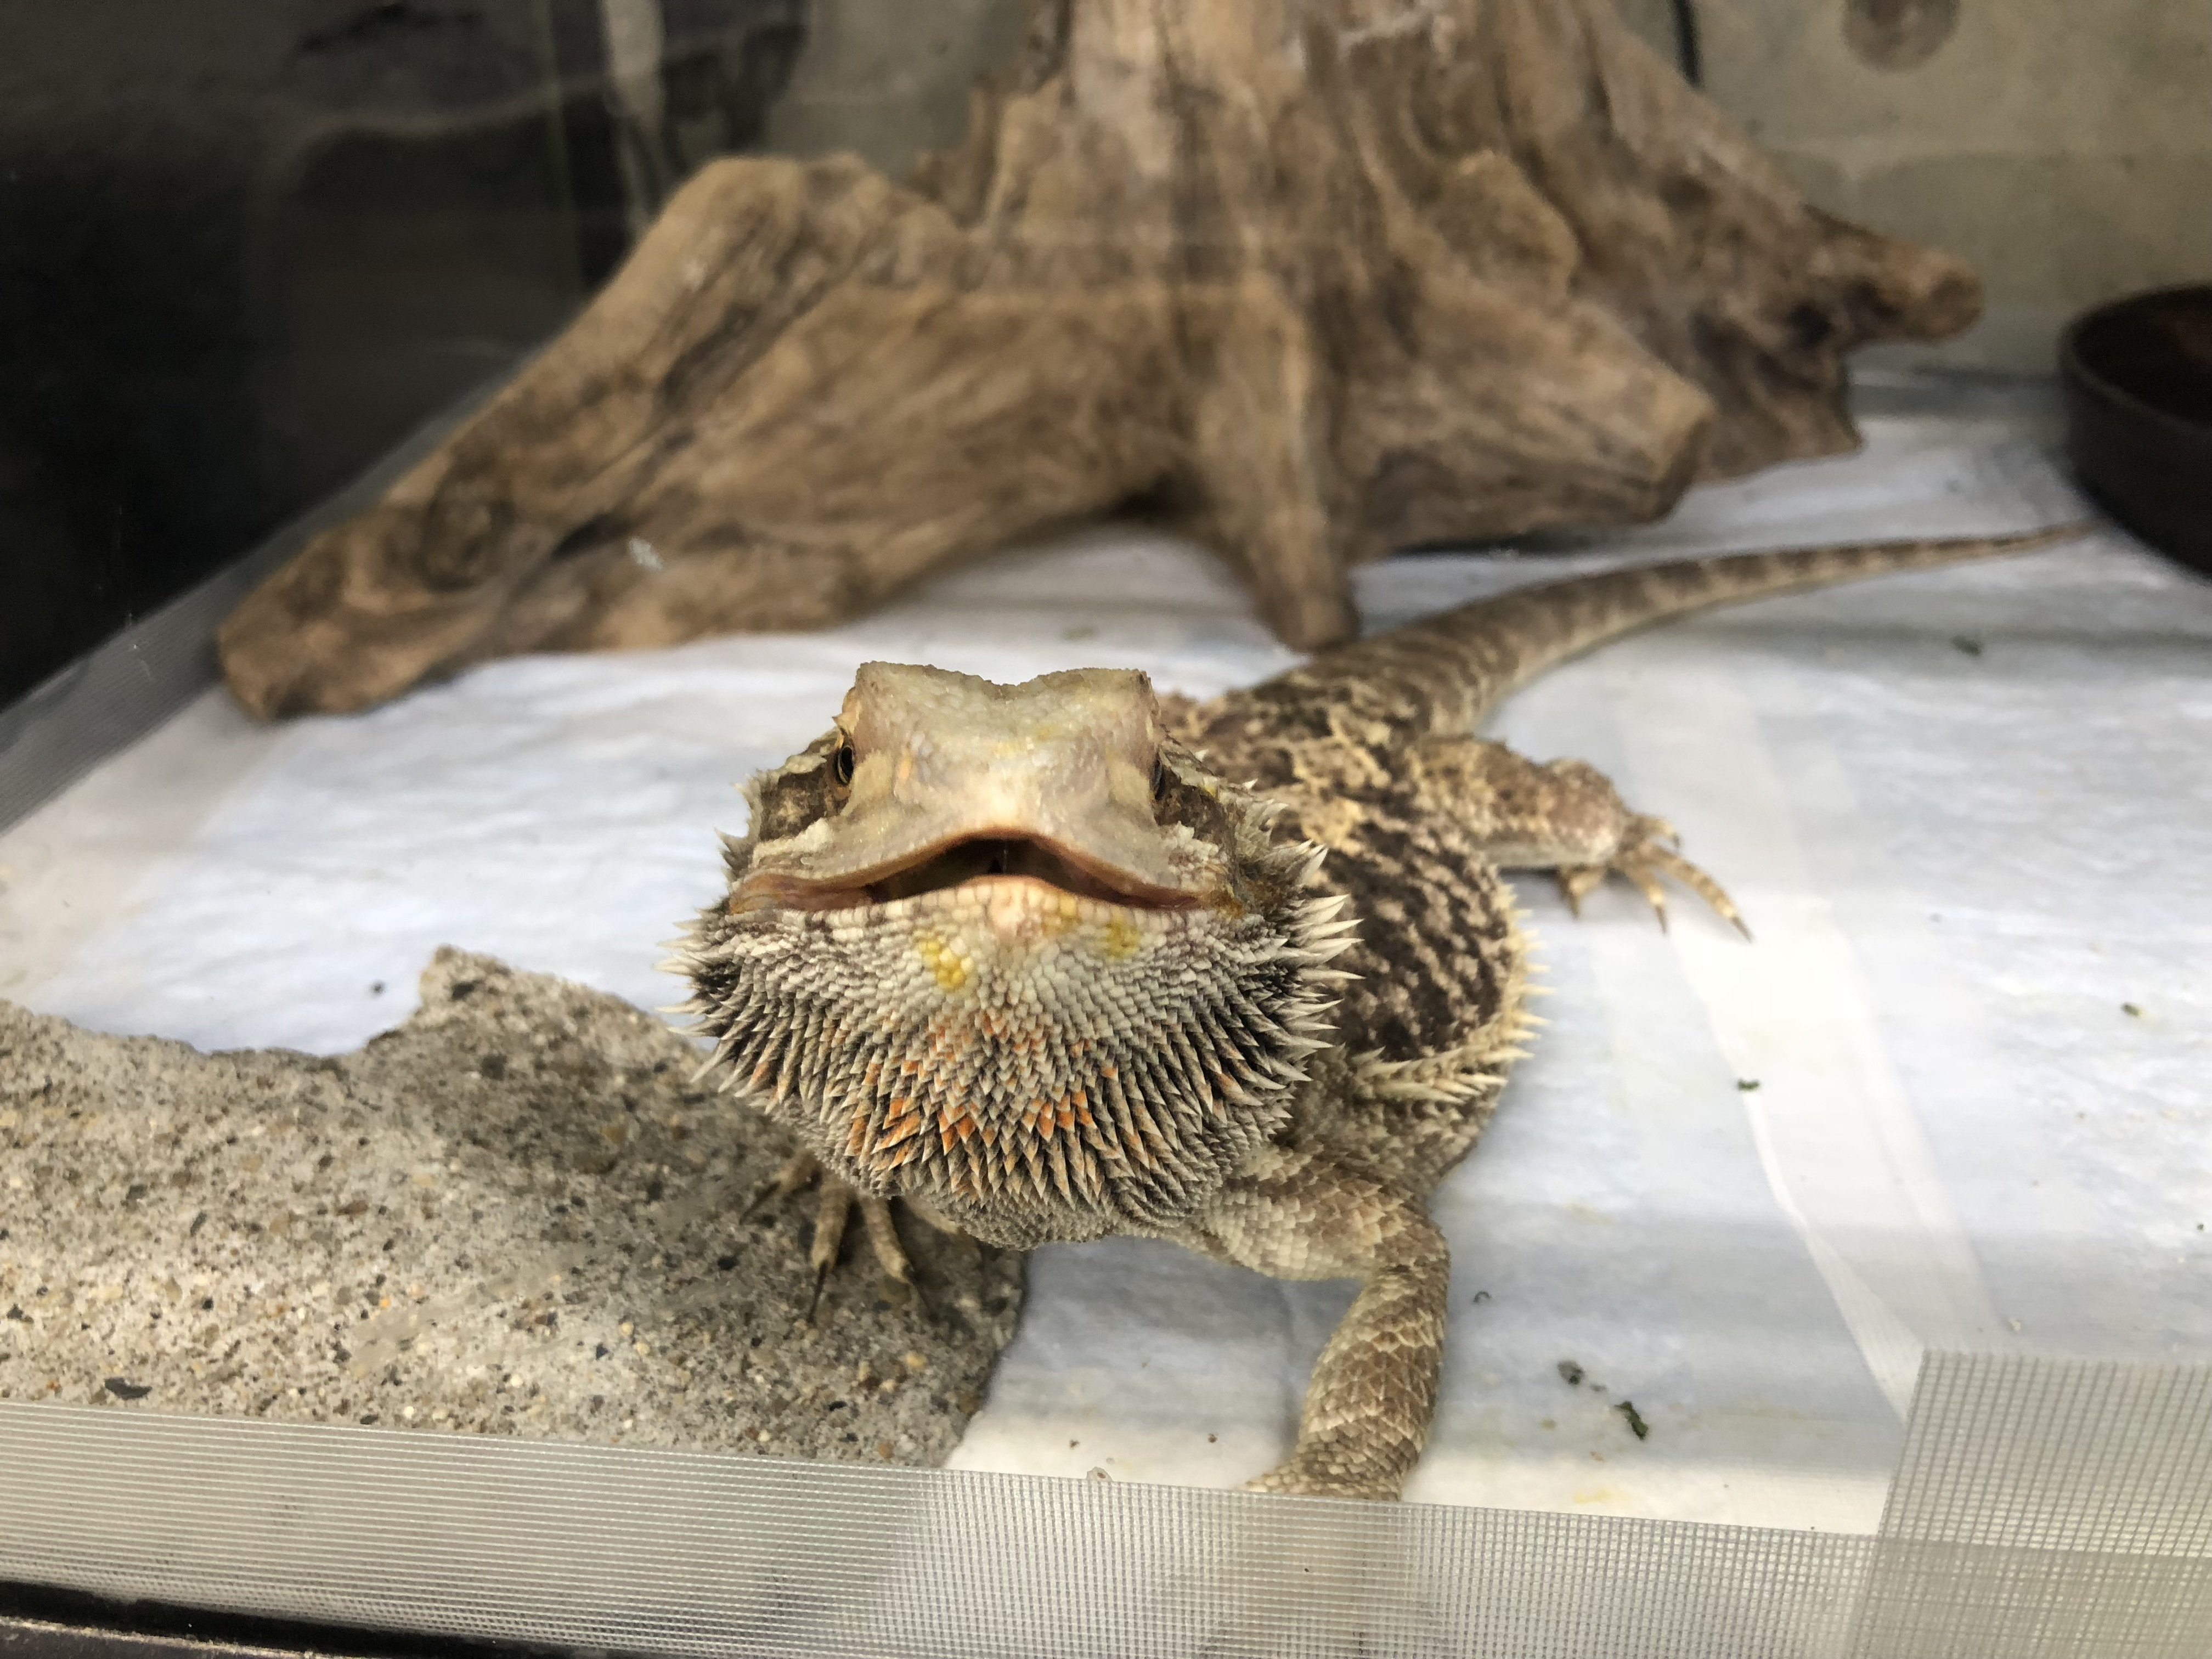 足立区生物園 フトアゴヒゲトカゲの正面顔です 口角が上がっているので笑っているように見えますね バックヤードで すくすく成長中です 大きくなってから展示予定ですのでお楽しみに 足立区 生物園 爬虫類 フトアゴヒゲトカゲ スマイル T